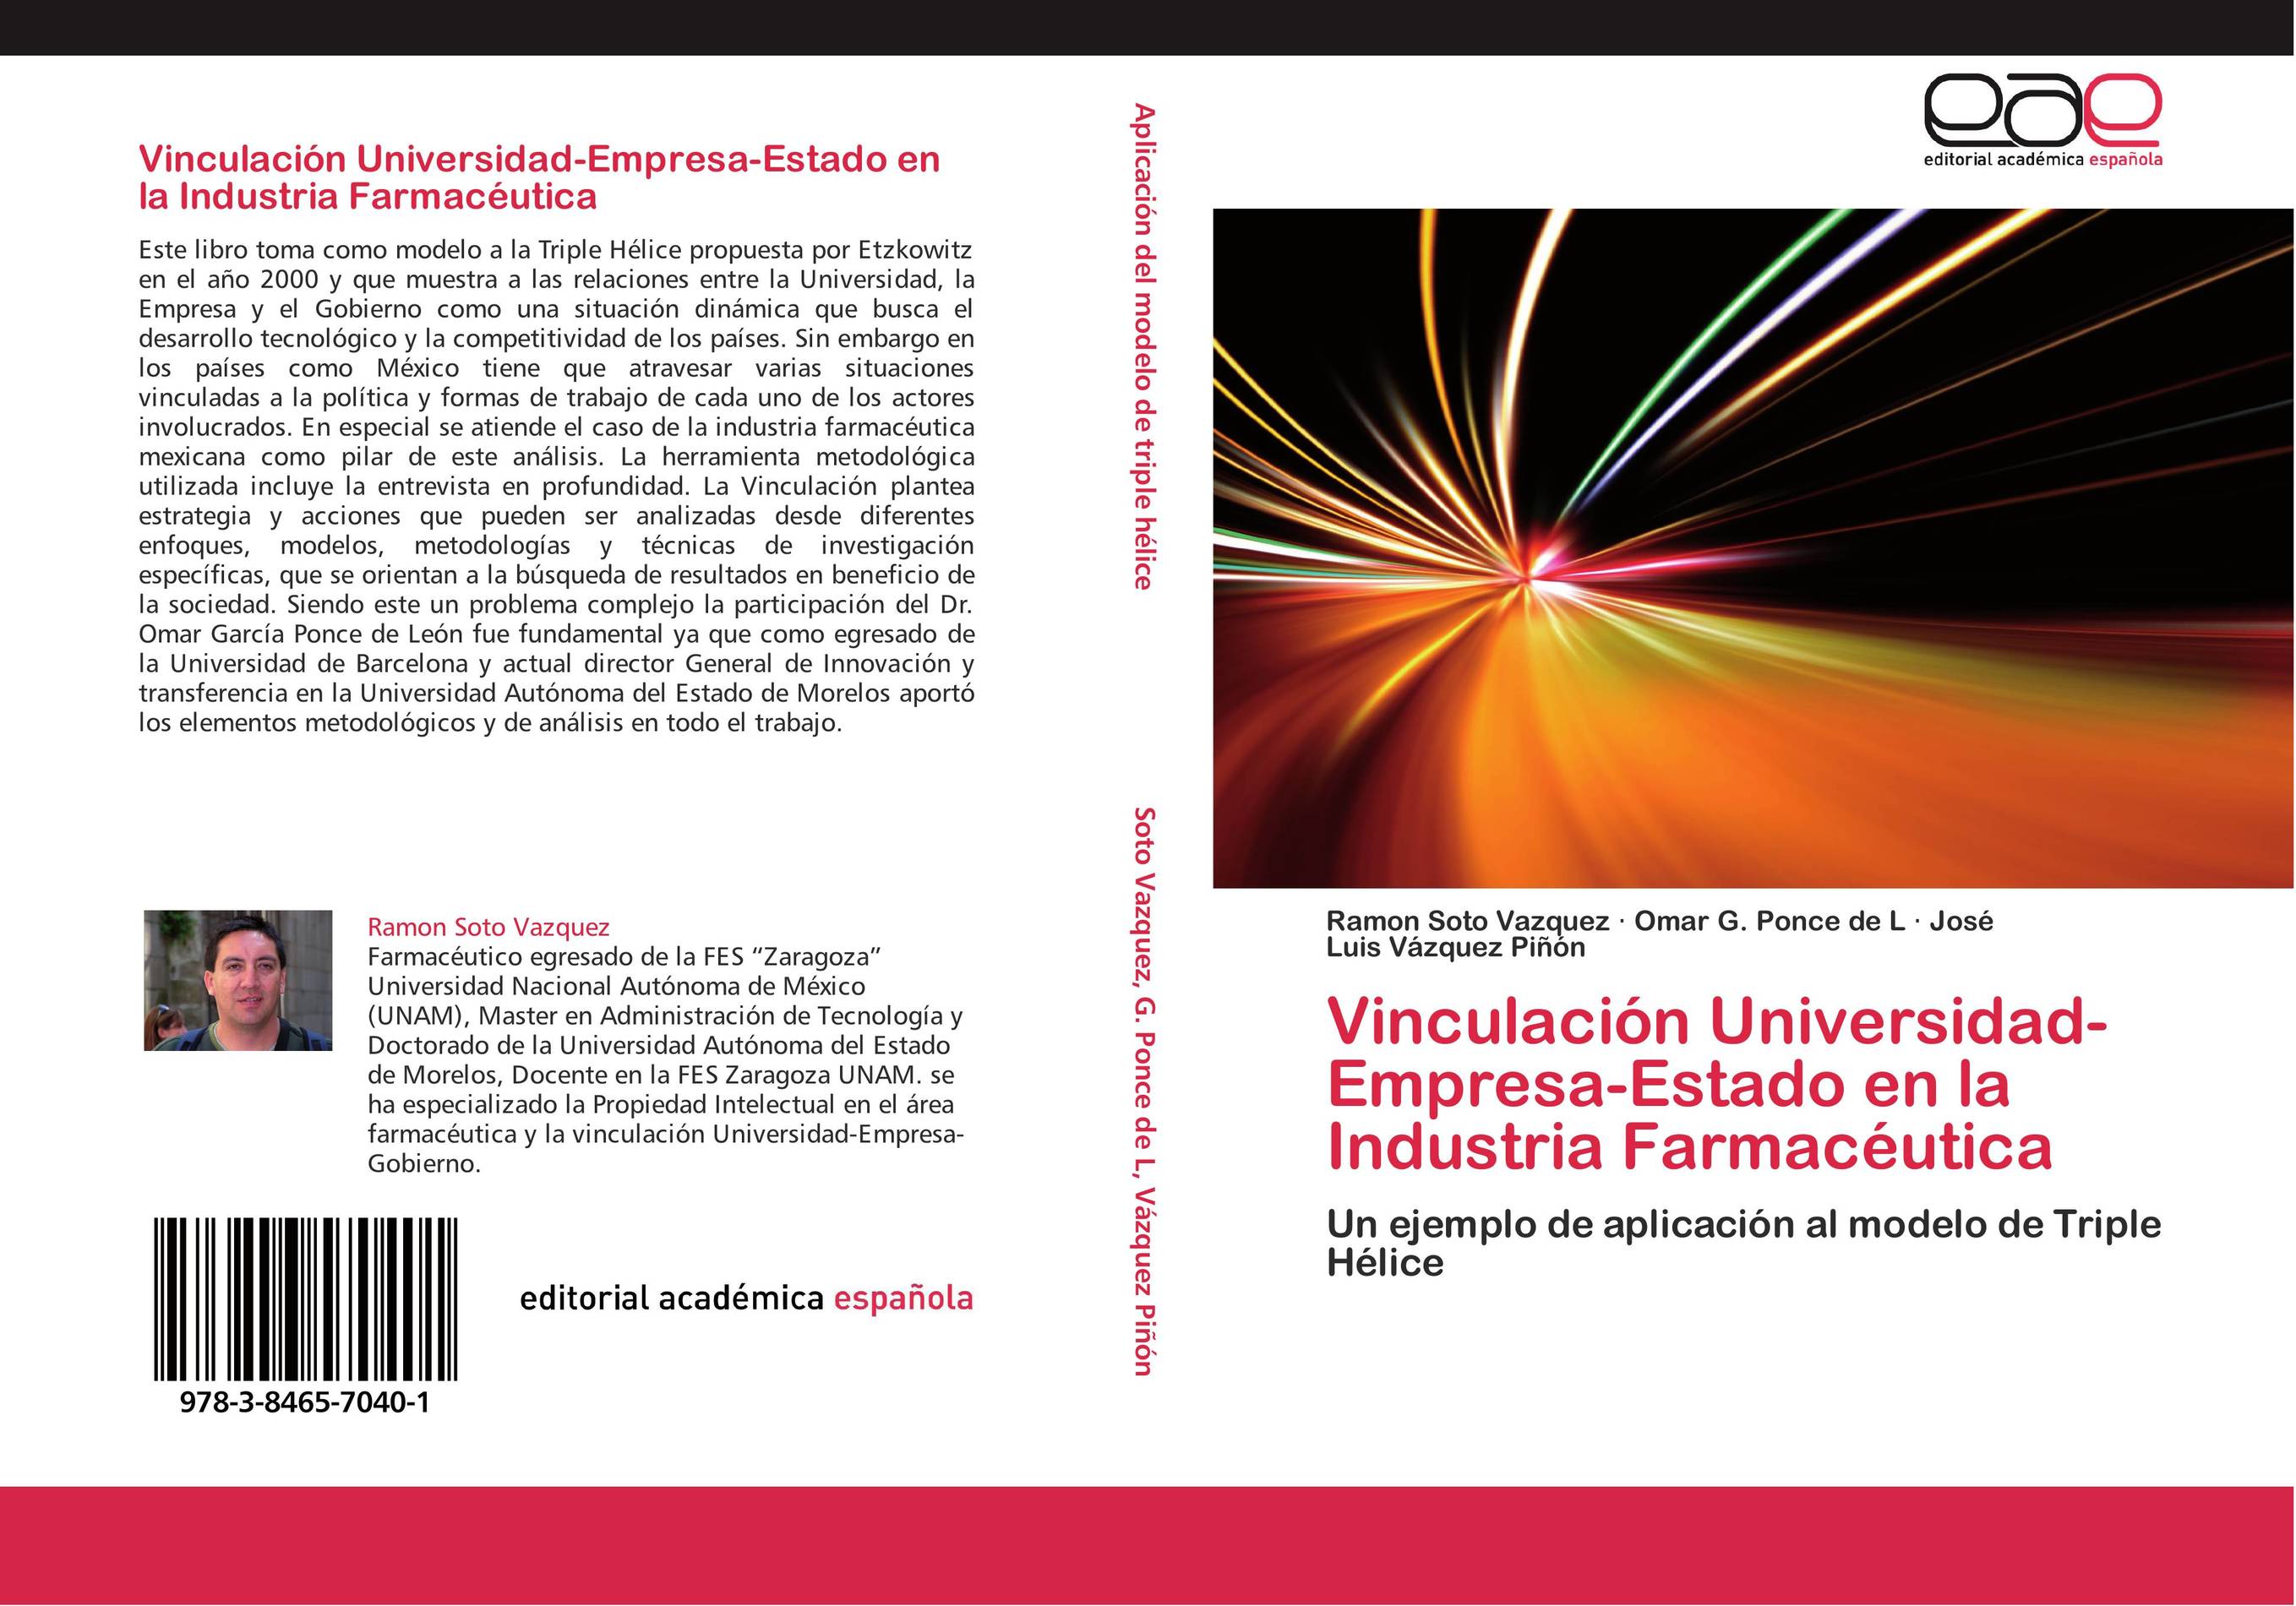 Vinculación Universidad-Empresa-Estado en la Industria Farmacéutica